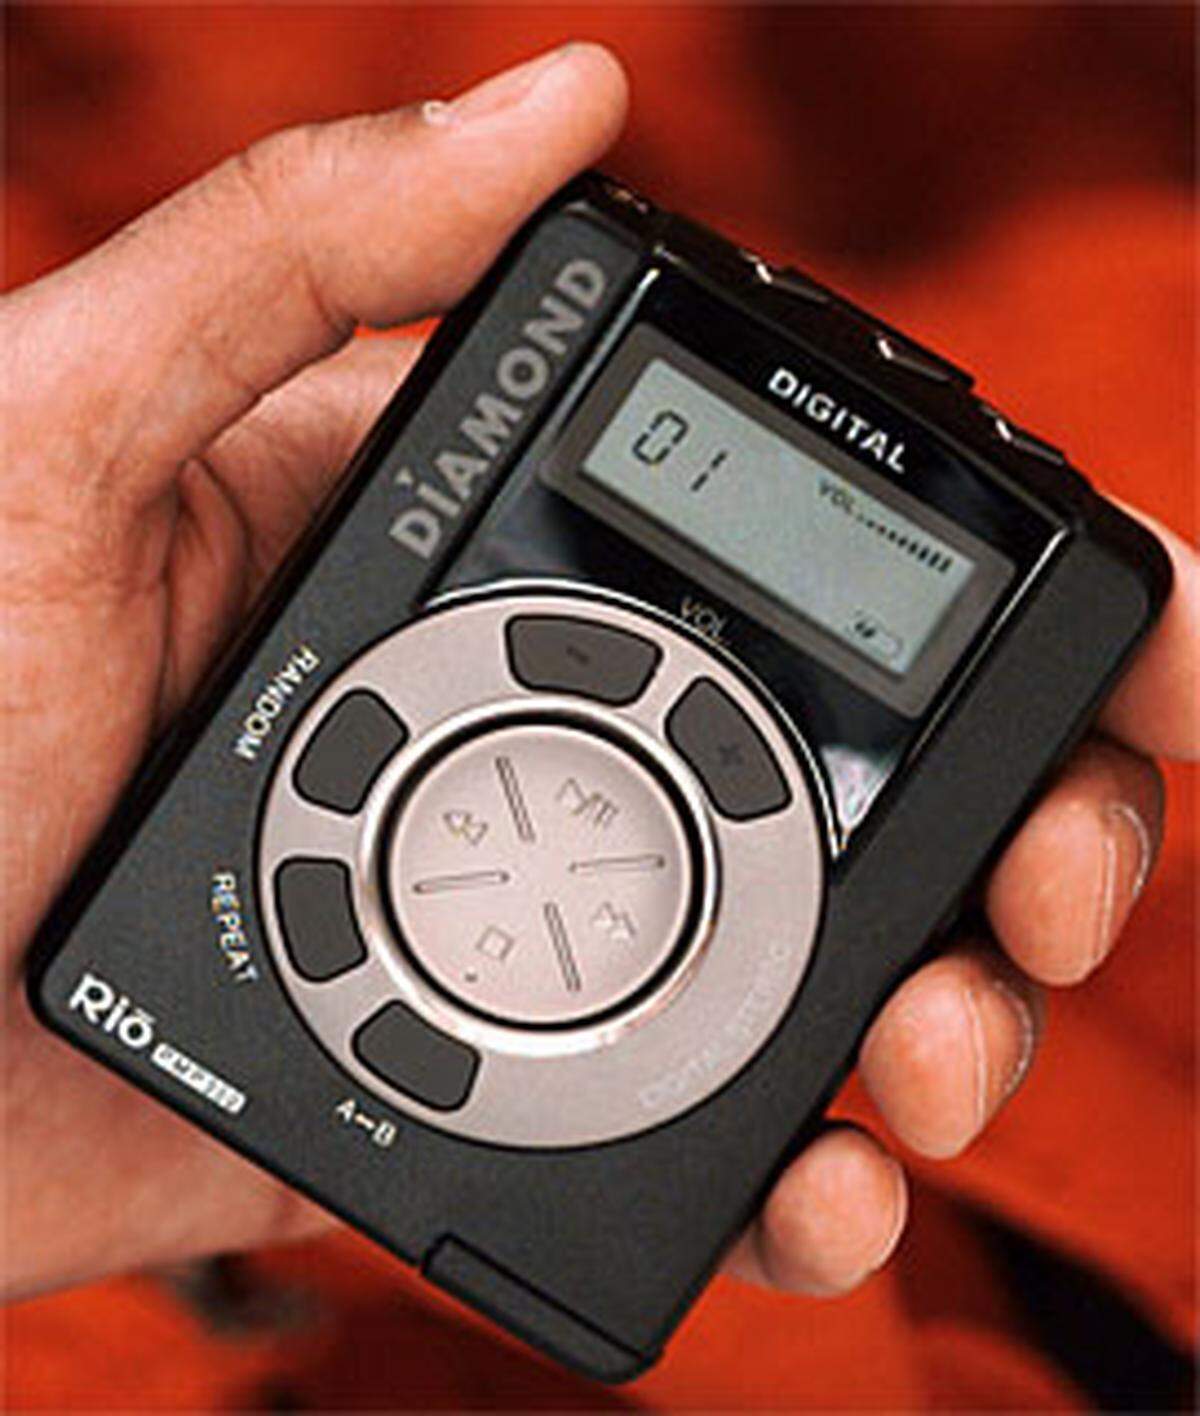 Nein, der iPod ist weder der einzige, noch war er der erste mp3-Player. Schon 1999 - drei Jahre vor Apples Dauerbrenner - wurde auf der IFA der erste mp3-Player vorgestellt.  Im Bild zu sehen ist ein Gerät der ersten Generation von Rio.